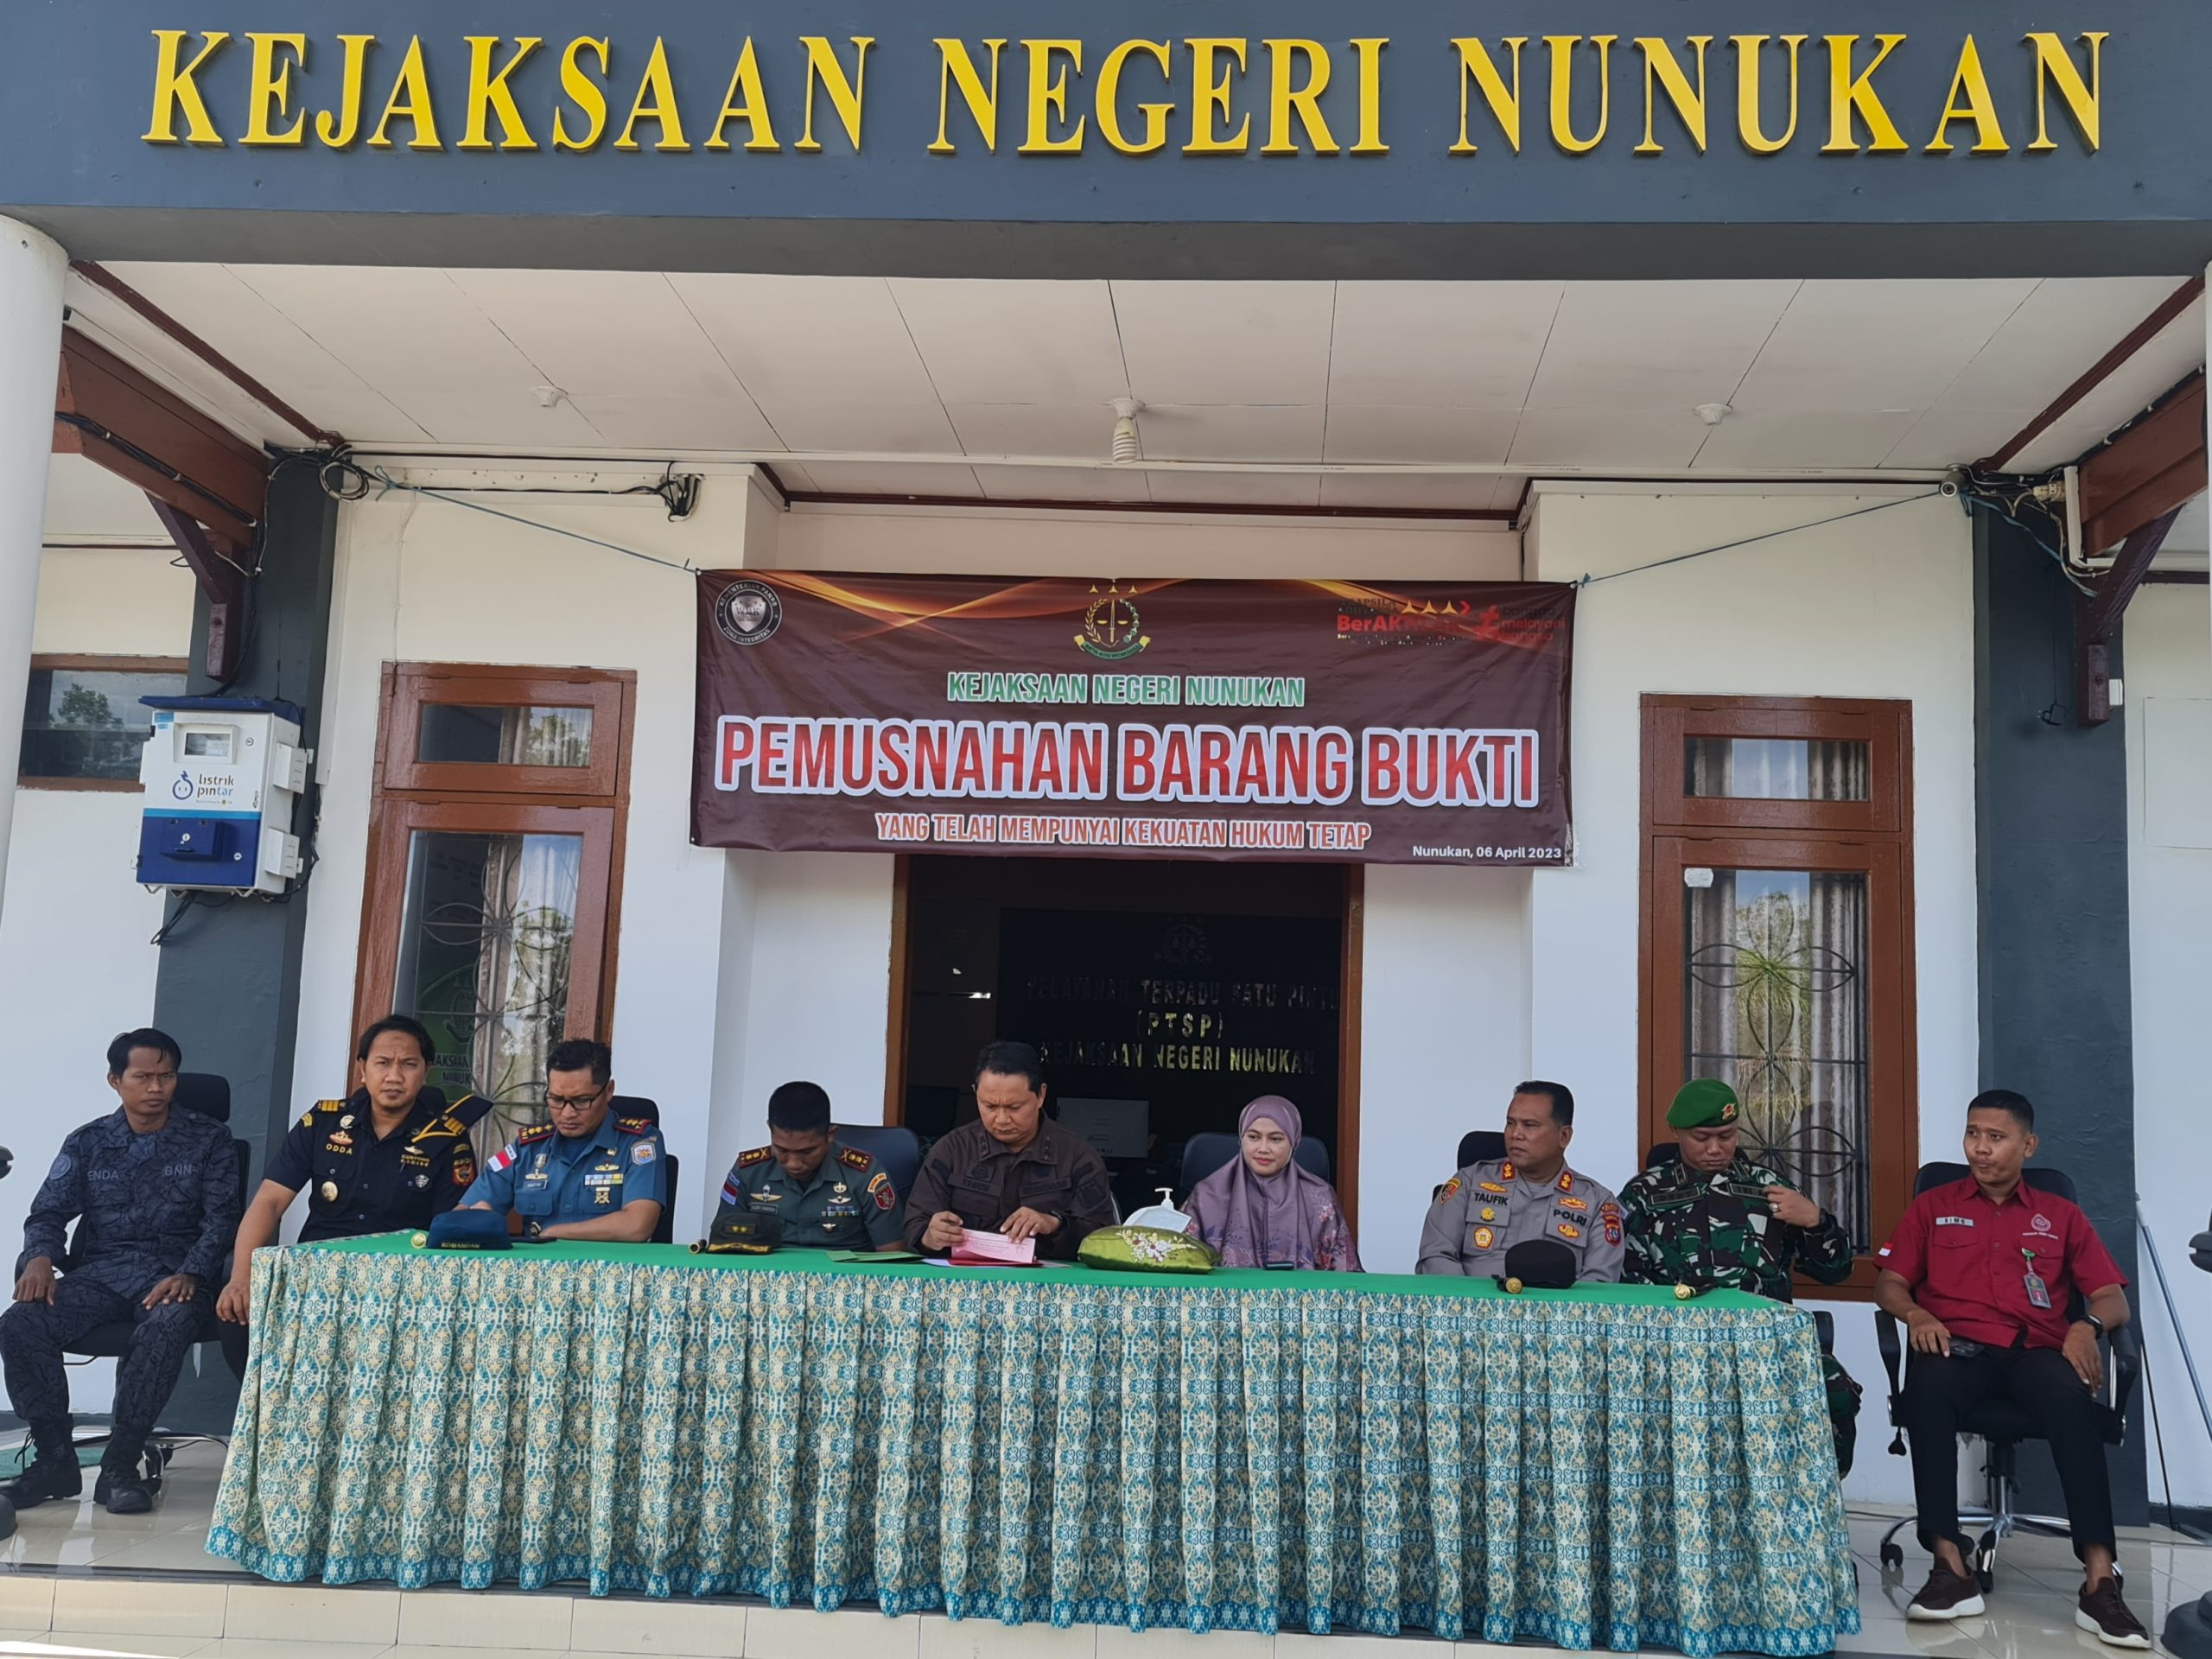 Buparlti Nunukan, Hj Asmin laura Hafid, SE MM, Ph.D hadiri pemusnahaan barang bukti tindak pidana umum di Kejaksaan Negeri Nunukan